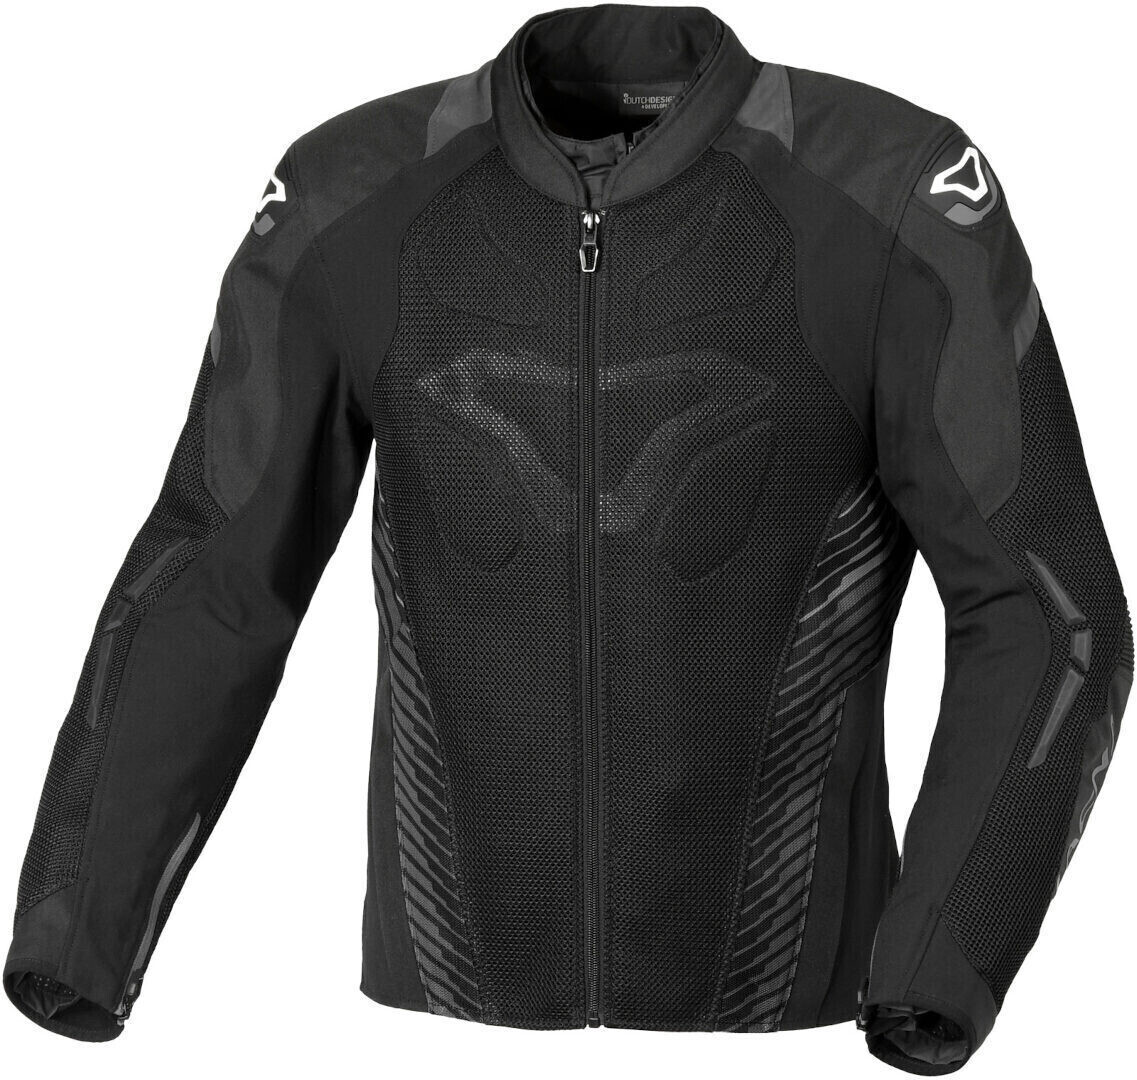 Photos - Motorcycle Clothing Macna Novic Jacket black 